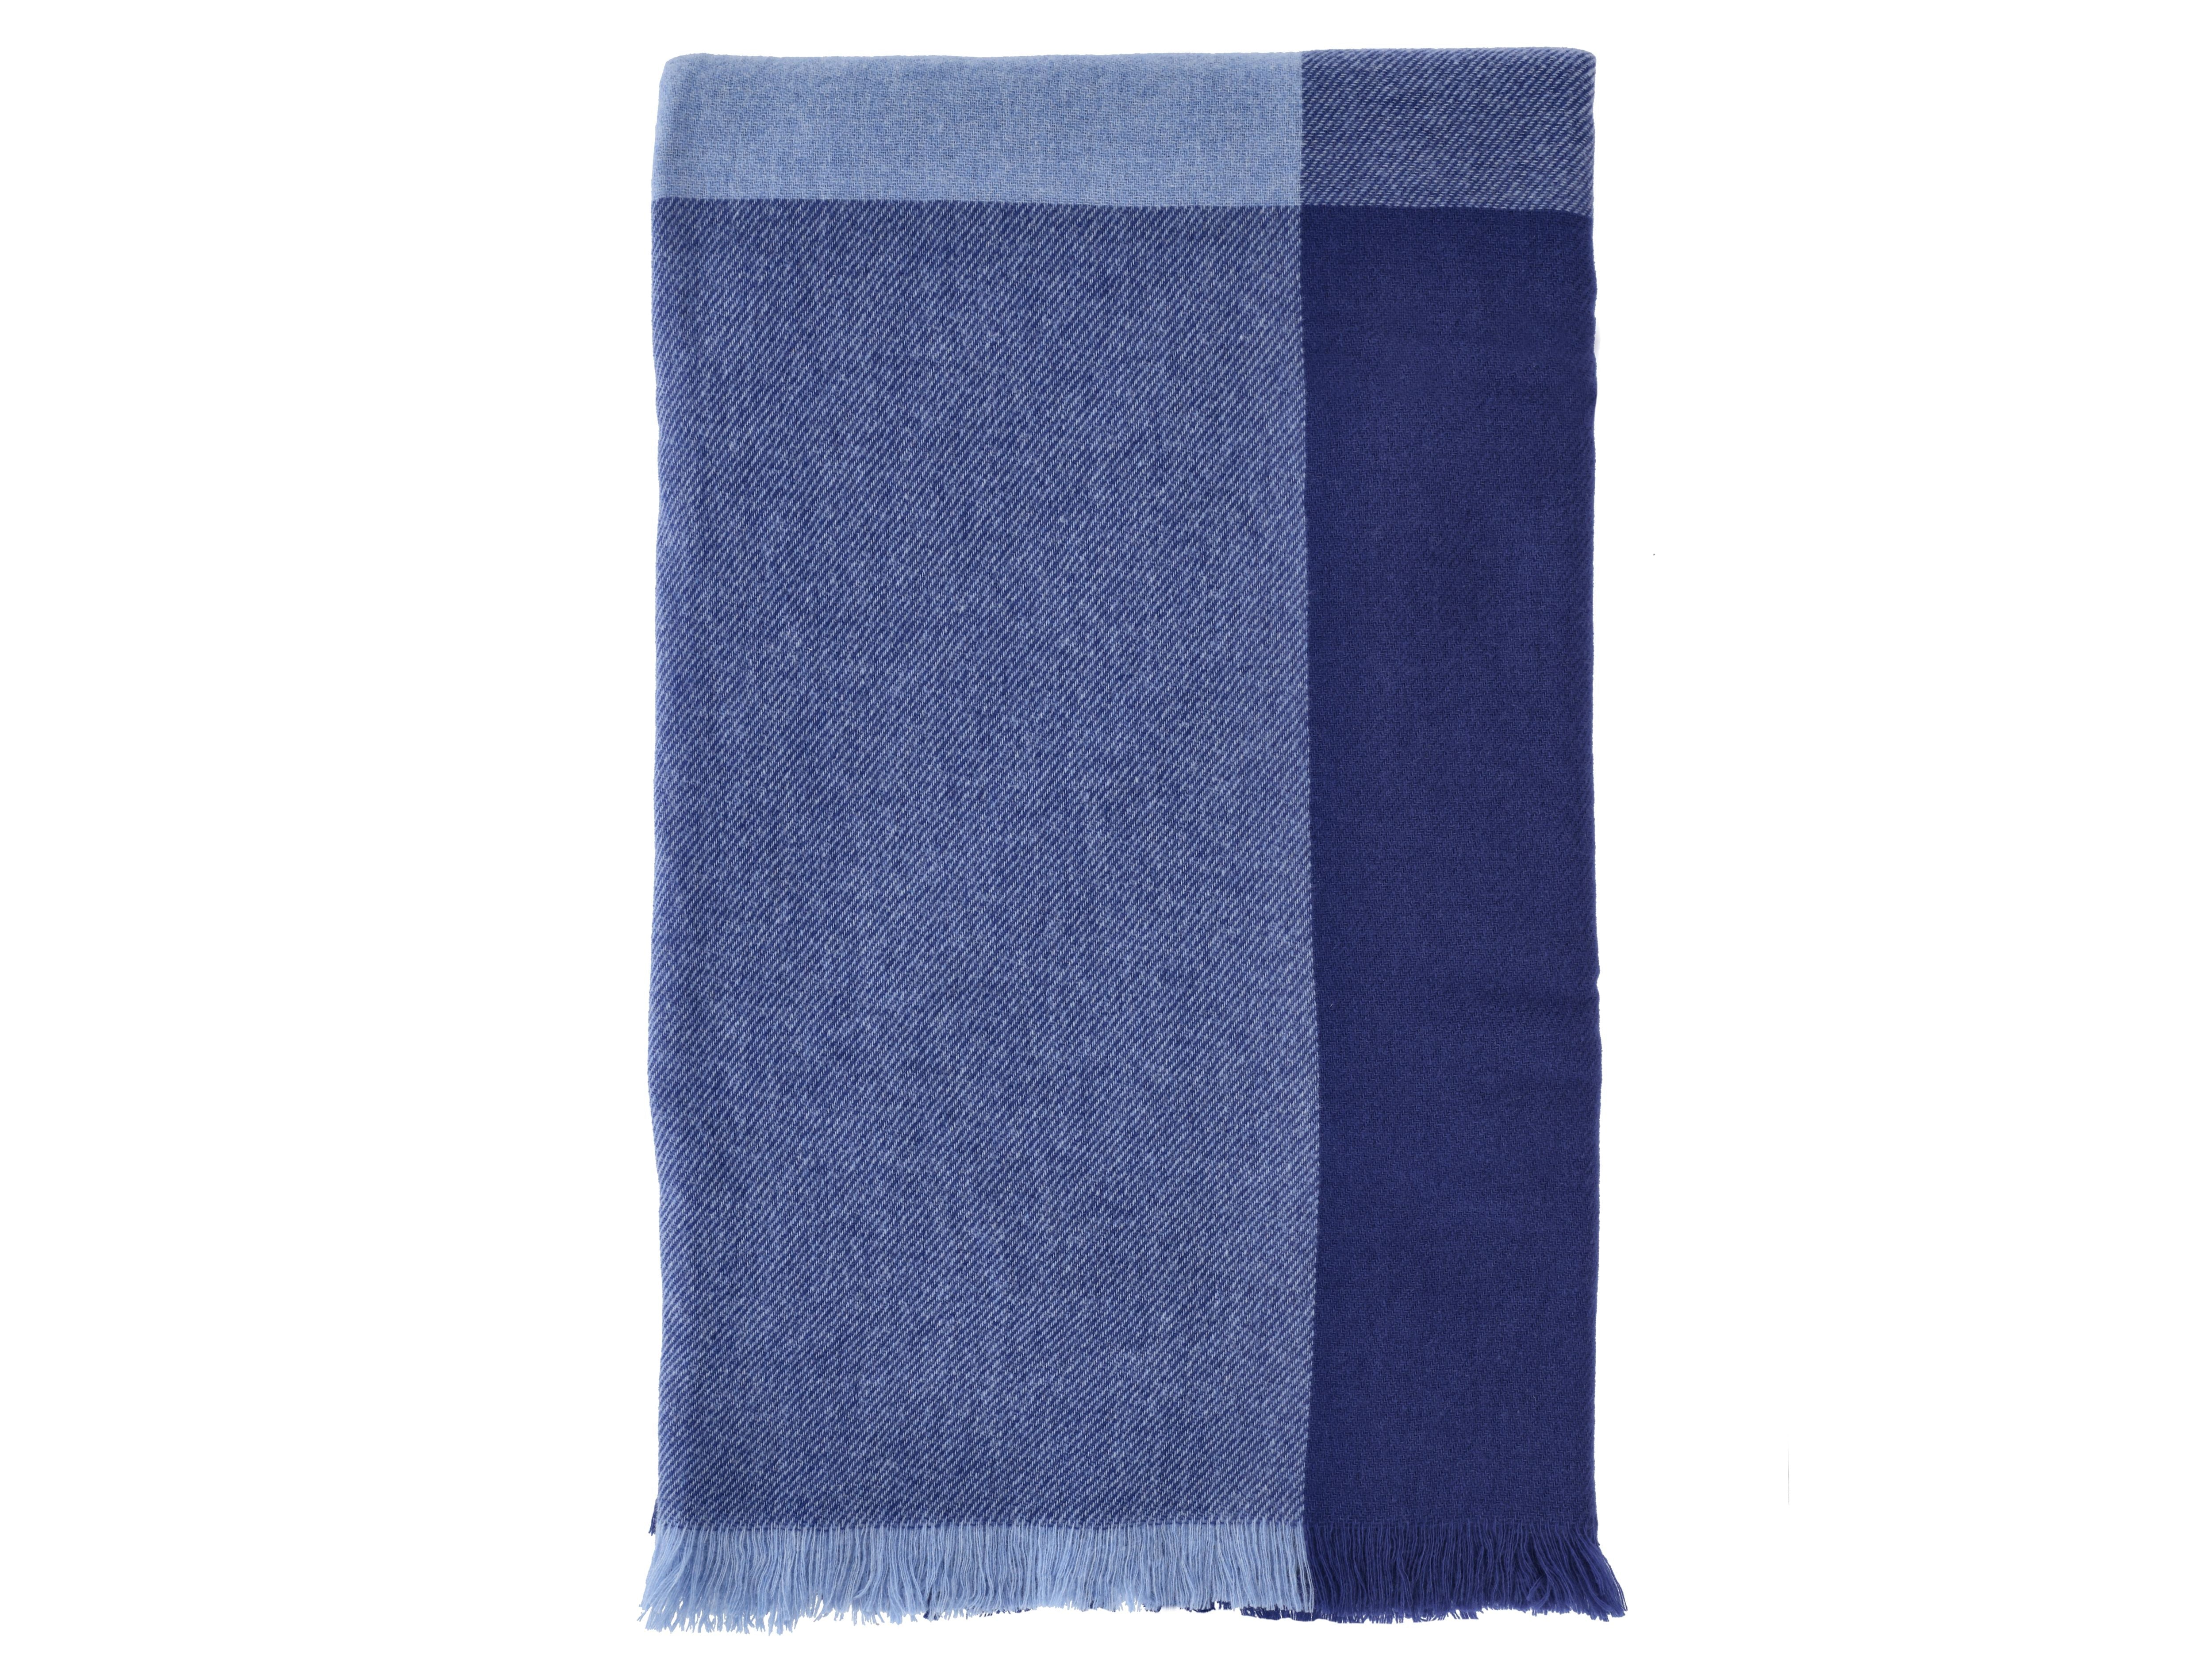 Södahl Merino Blanket 140x200 Cm, Royal Blue